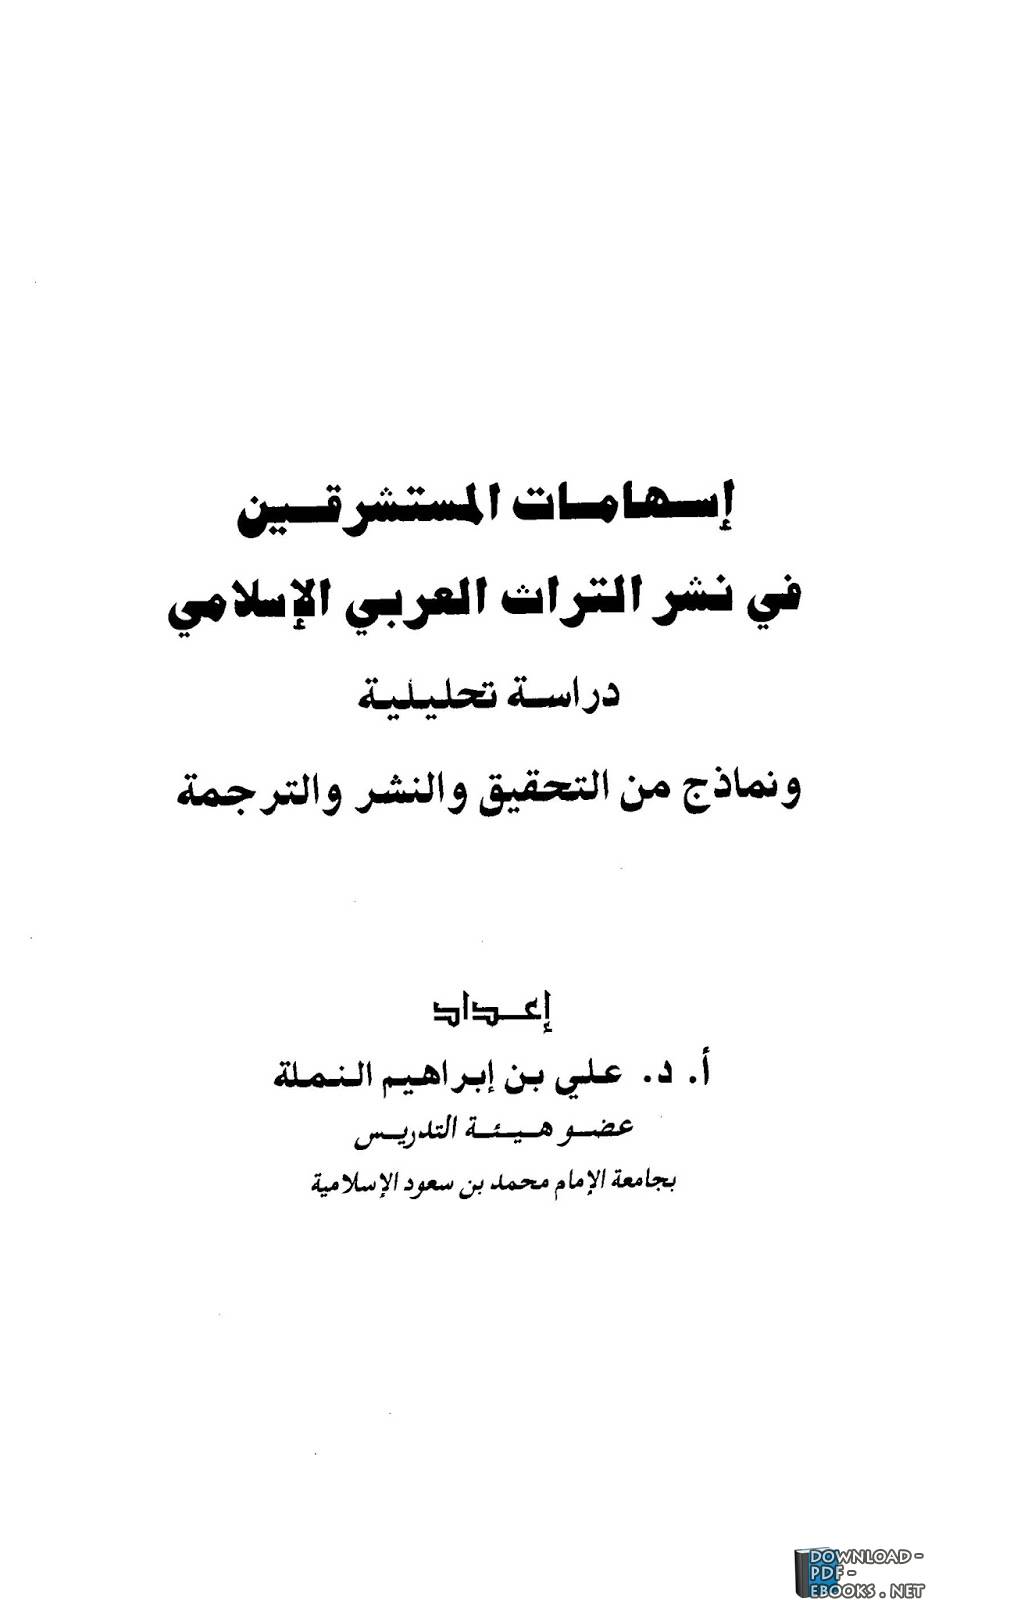  إسهامات المستشرقين في نشر التراث العربي الإسلامي دراسة تحليلية ونماذج من التحقيق والنشر والترجمة